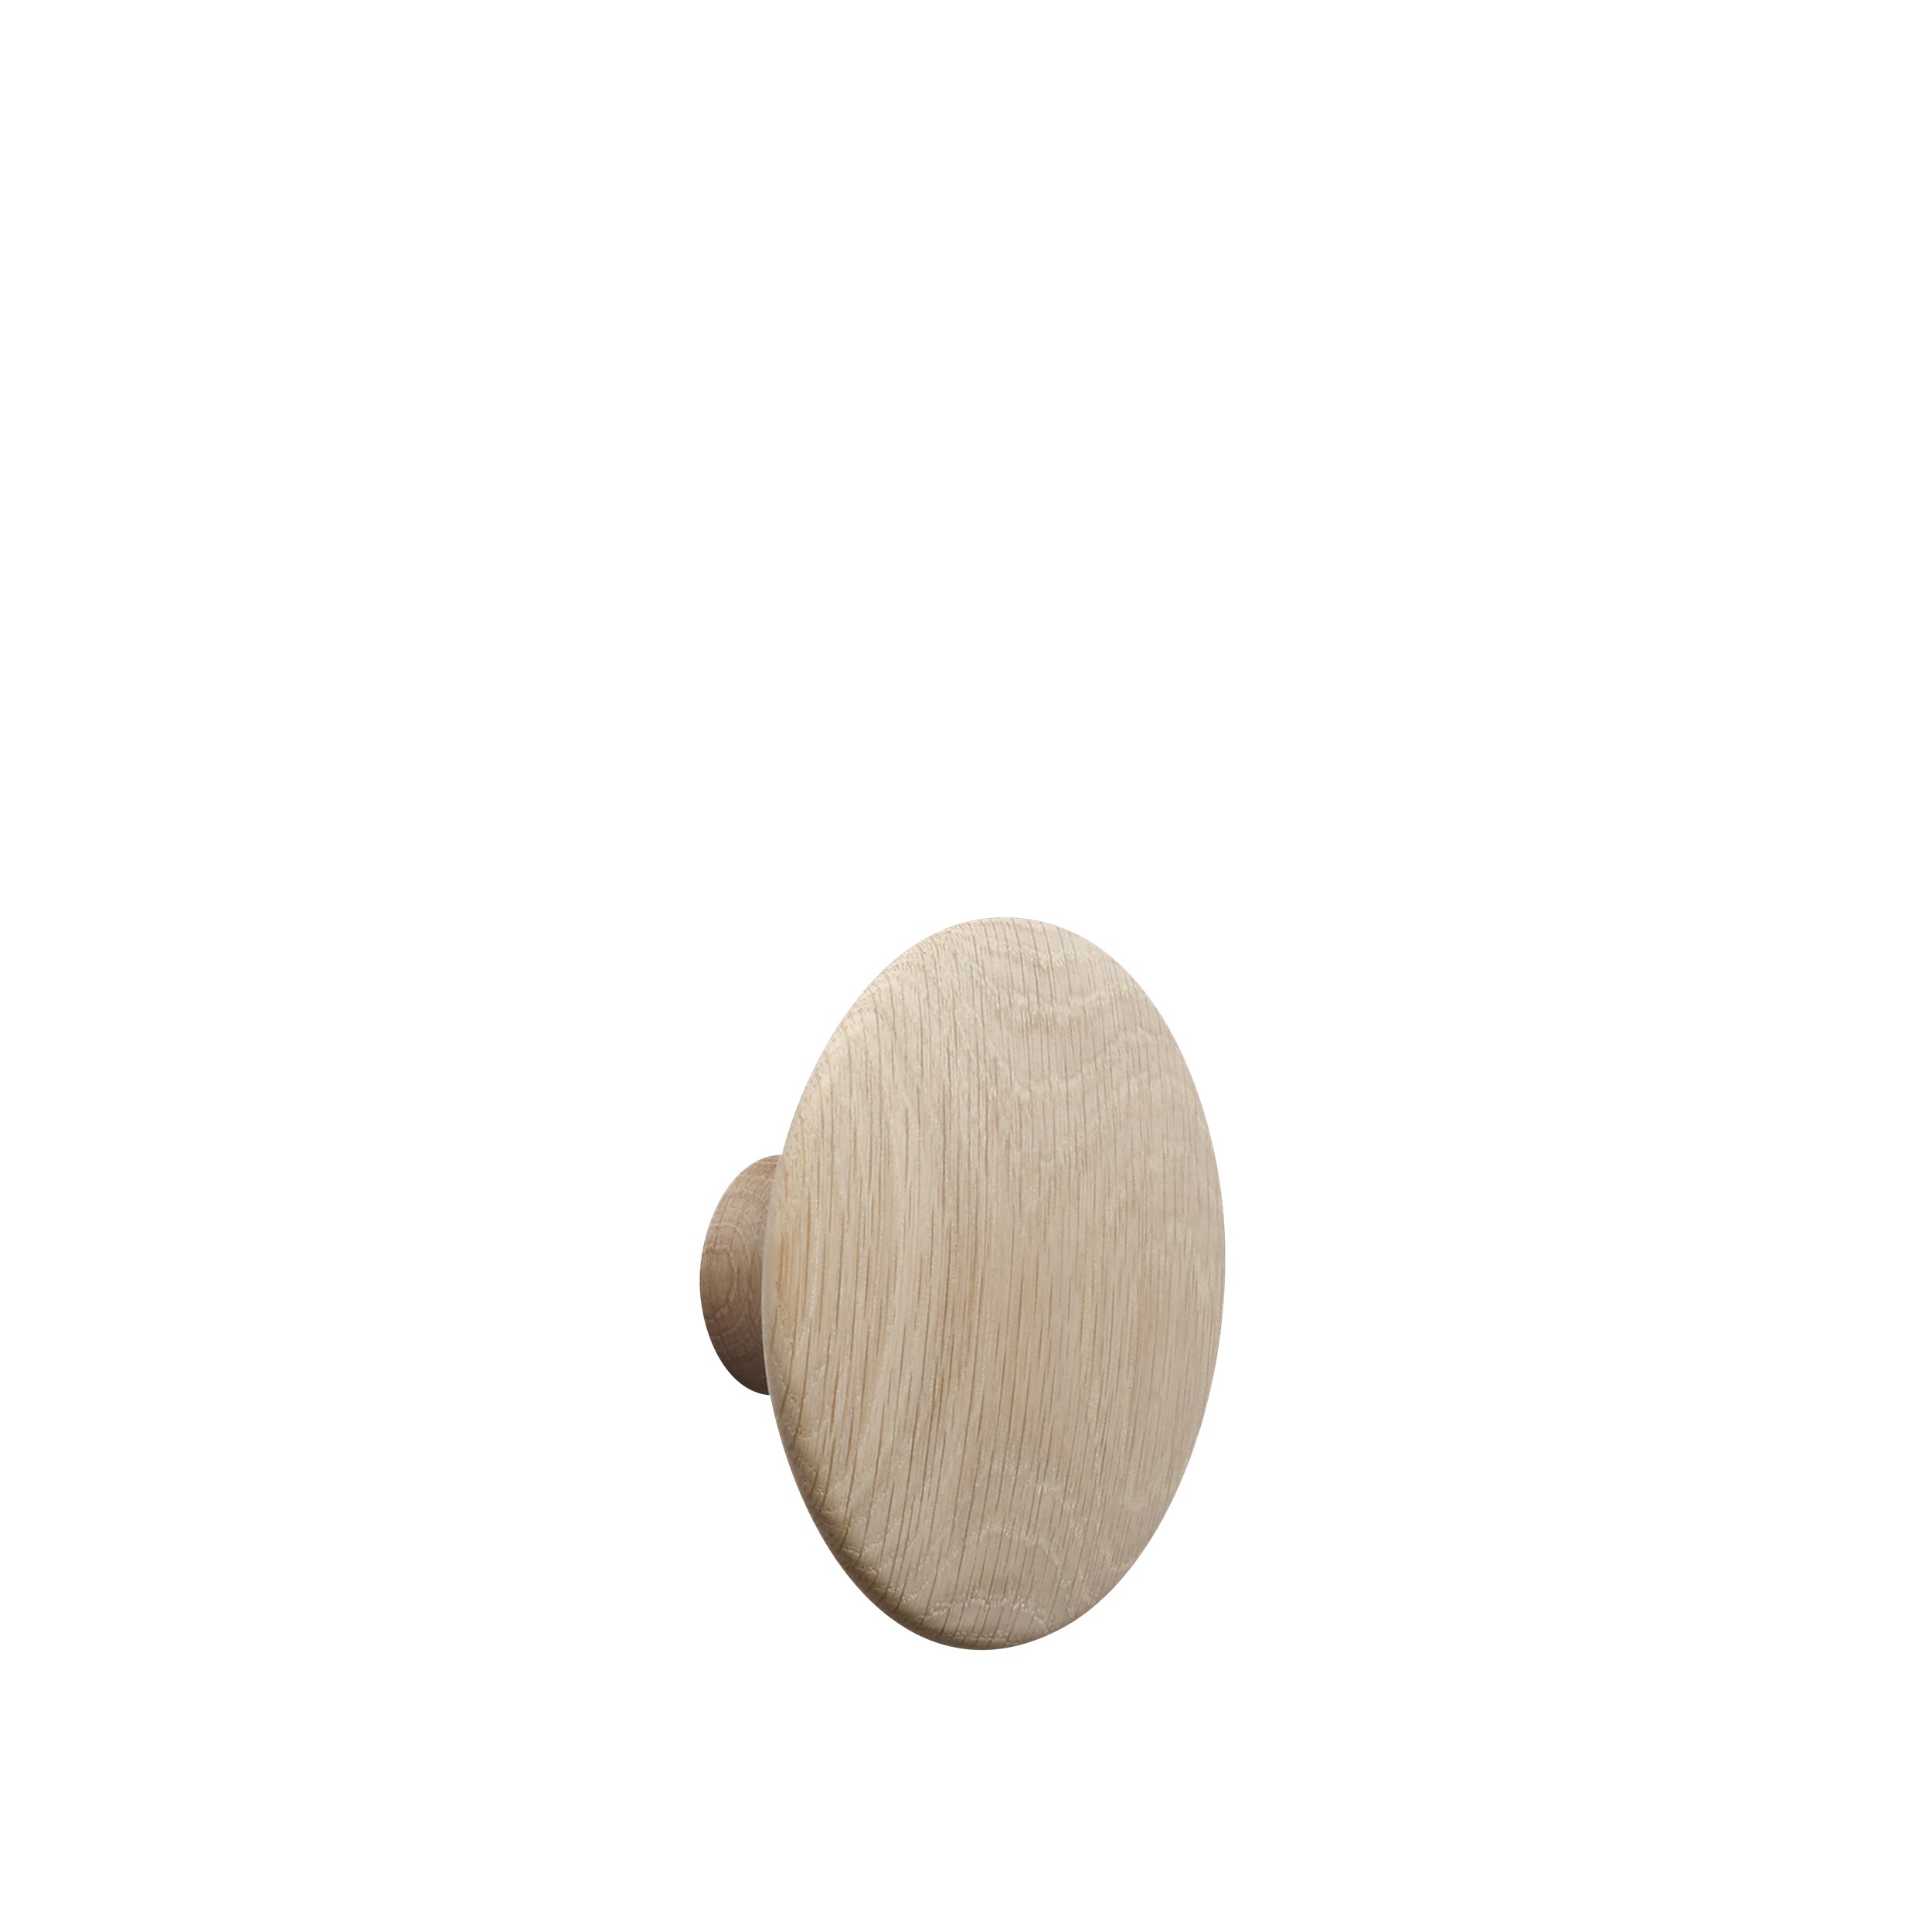 Dot wood medium Ø 13 cm oak